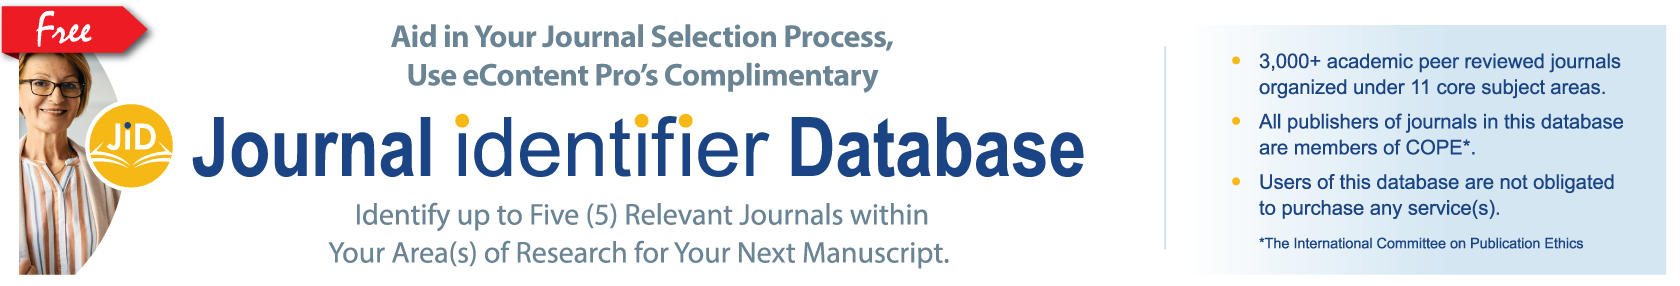 Journal Identifier Database Banner